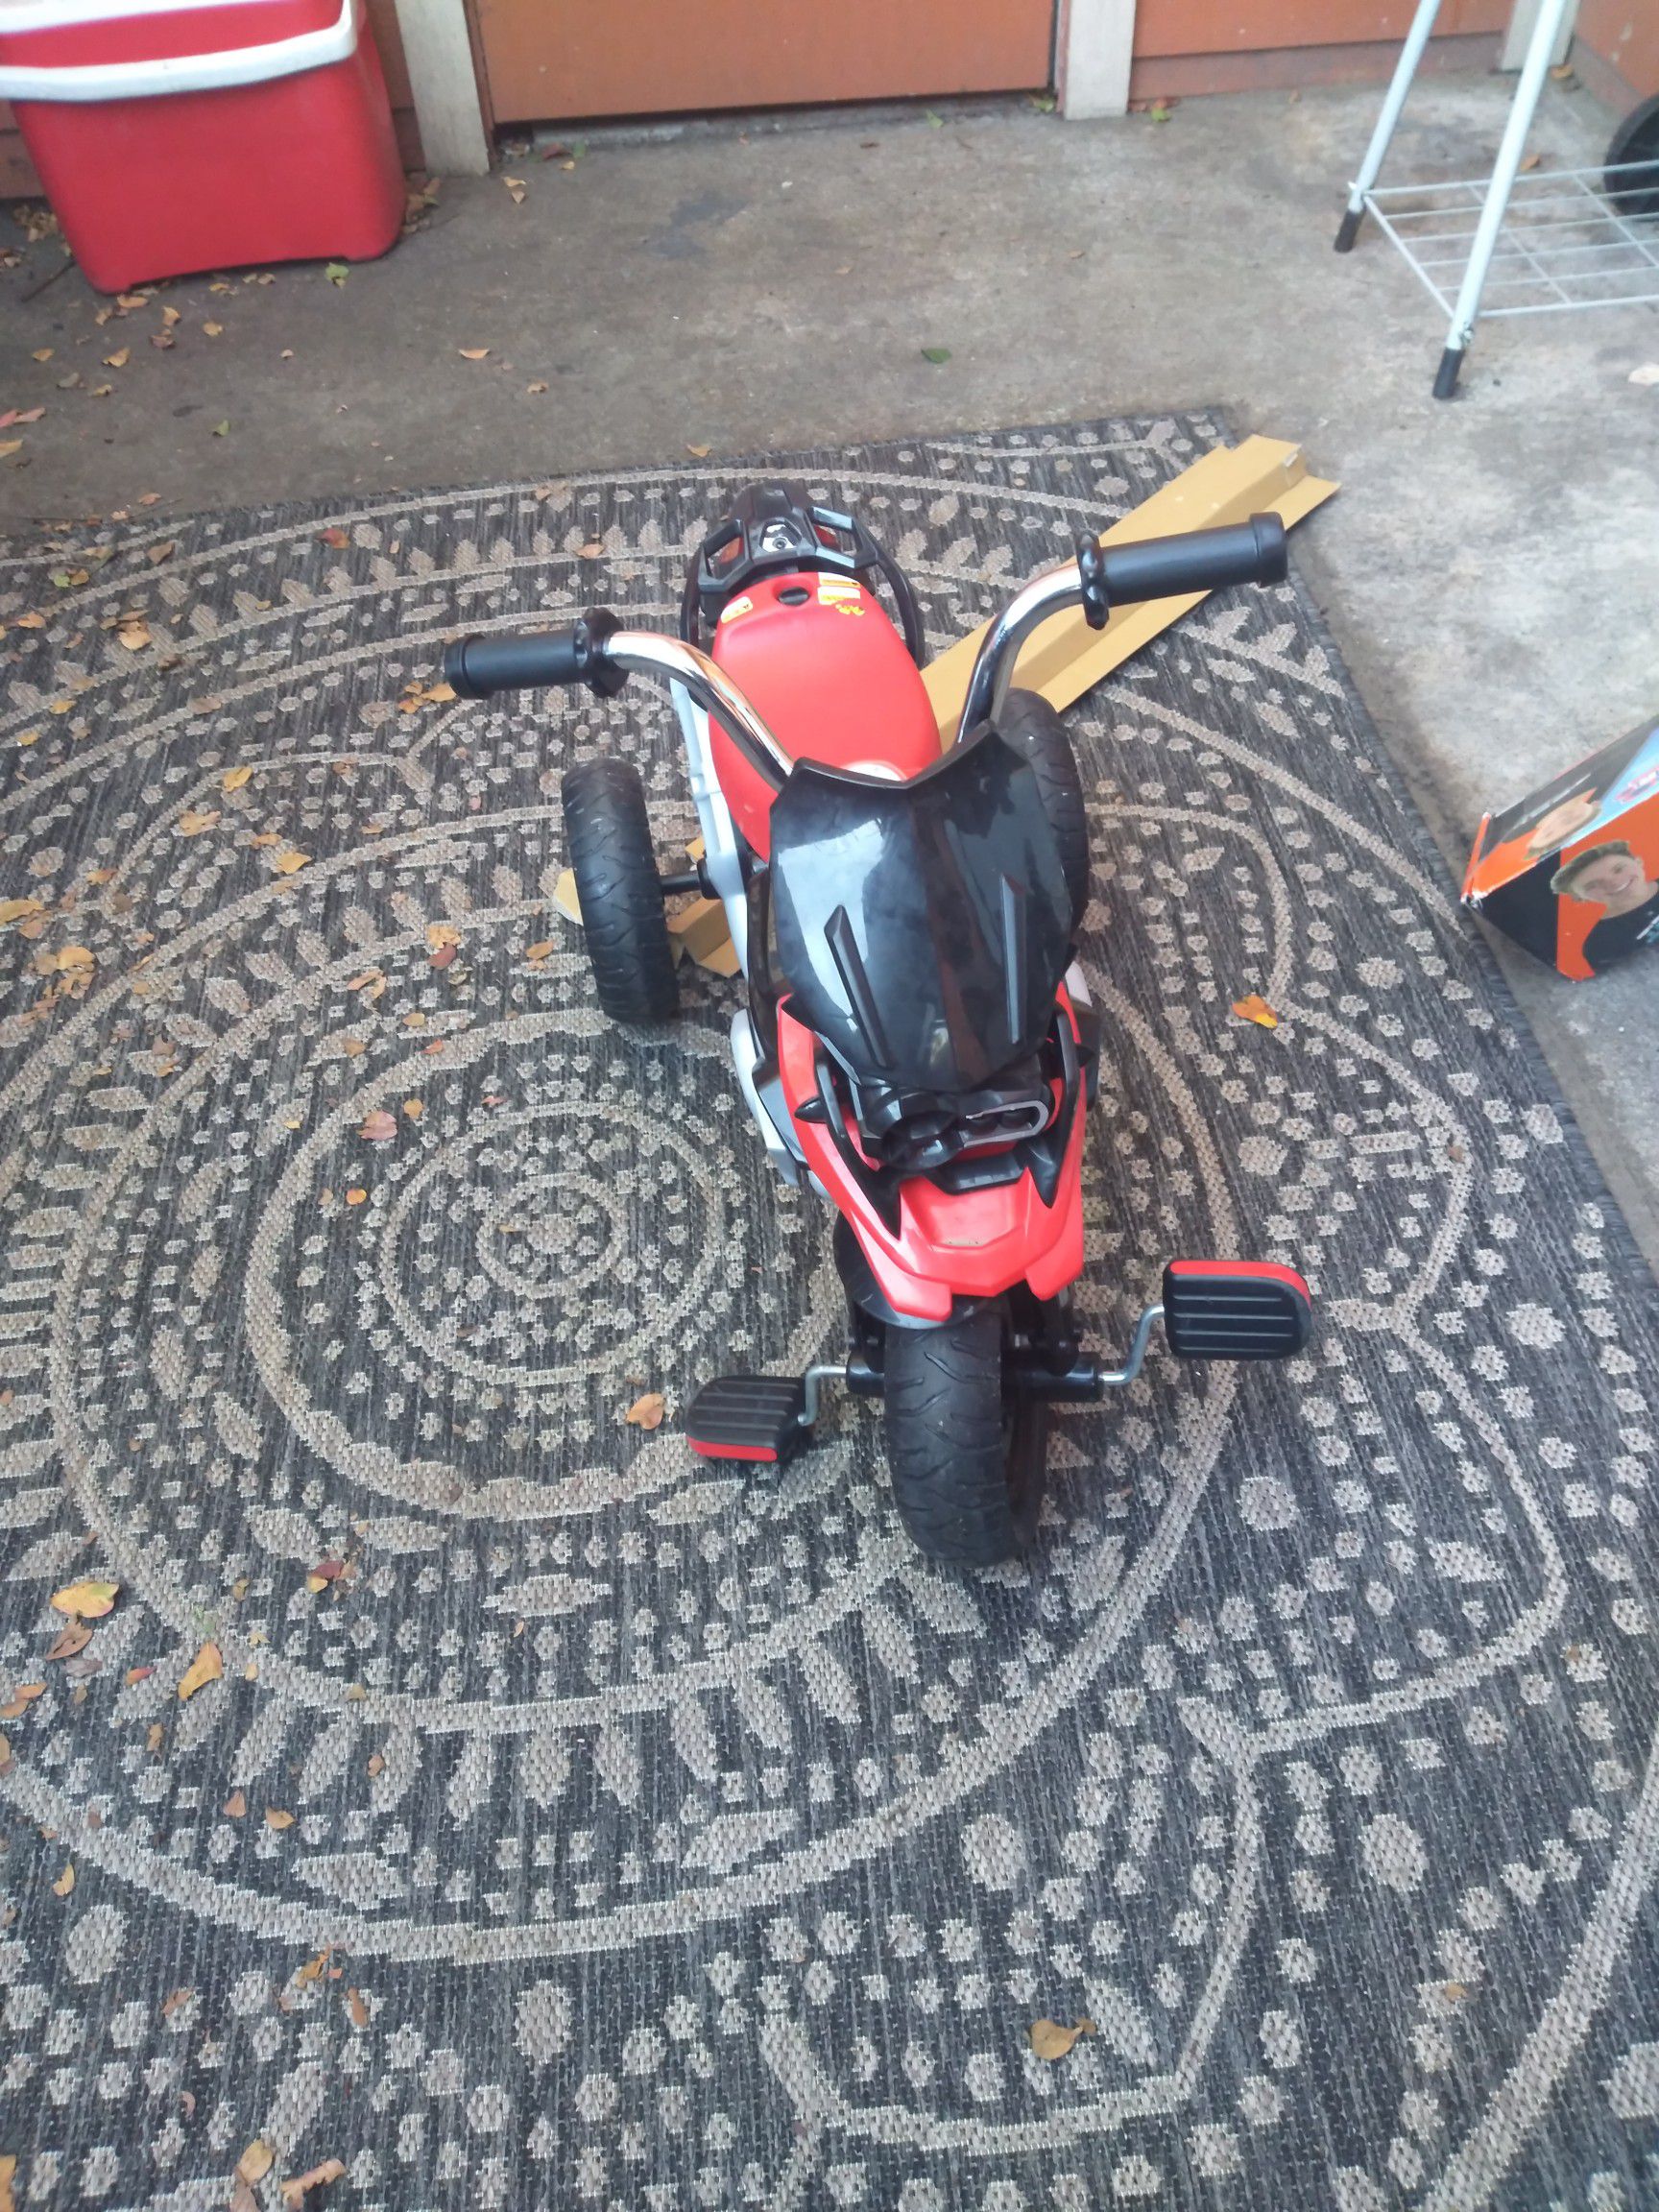 Bmw motorcycle 3 wheeler for toddler